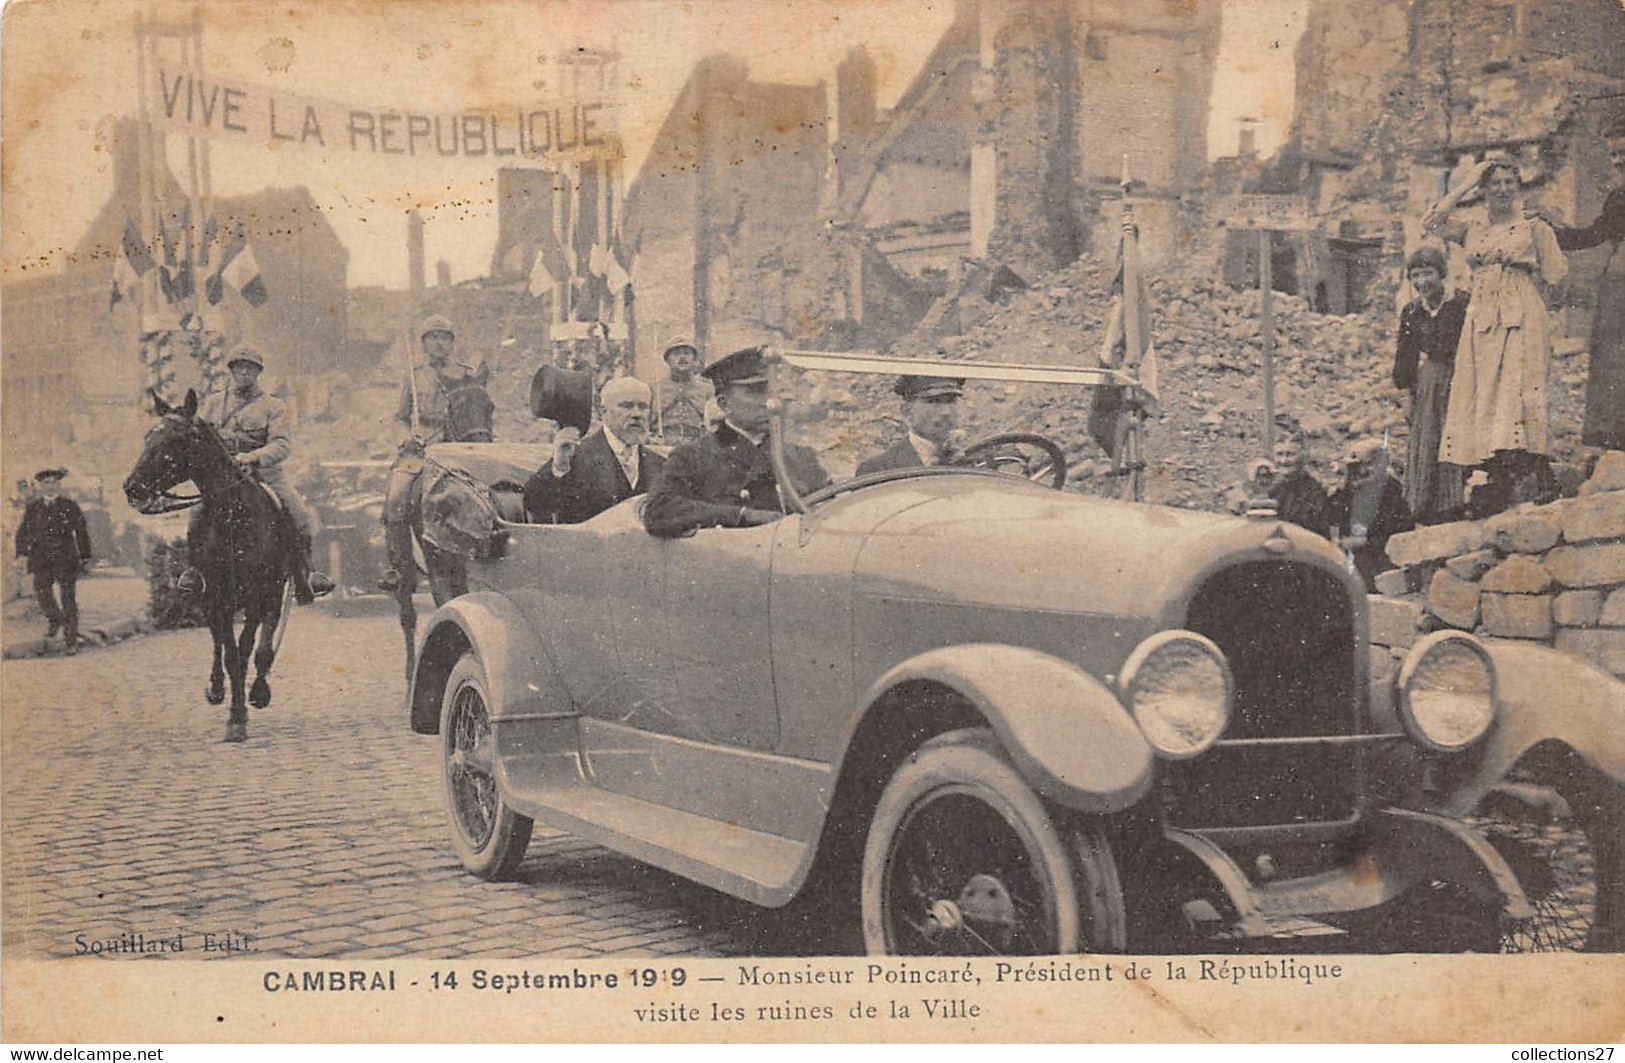 59-CAMBRAI- 14 SEP 1919, MR POINCARE PRESIDENT DE LA REPUBLIQUE VISITE LES RUINES DE LA VILLE - Cambrai